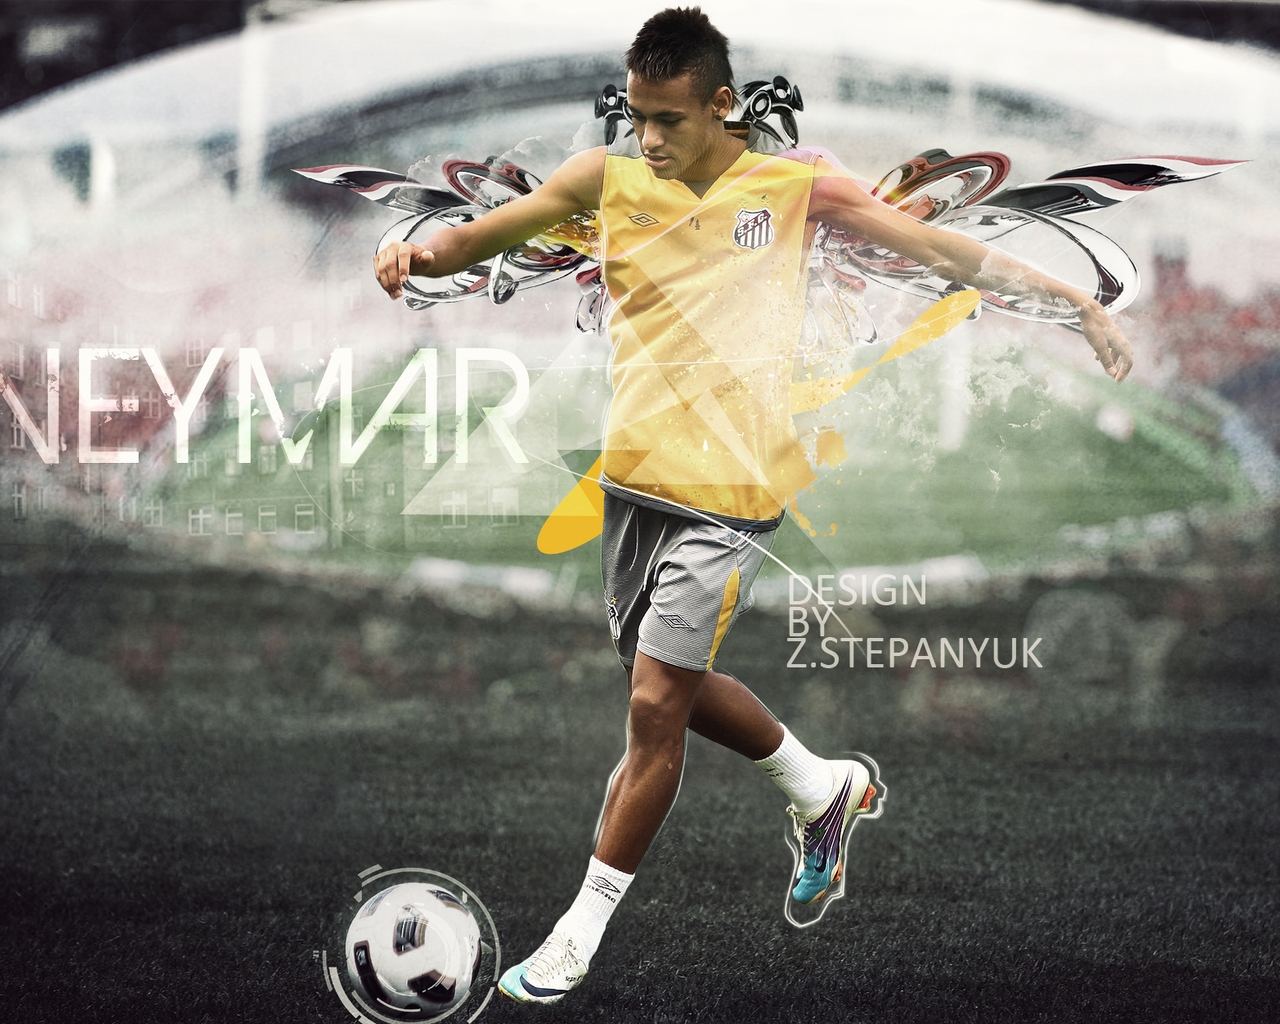 Neymar da Silva Santos for 1280 x 1024 resolution